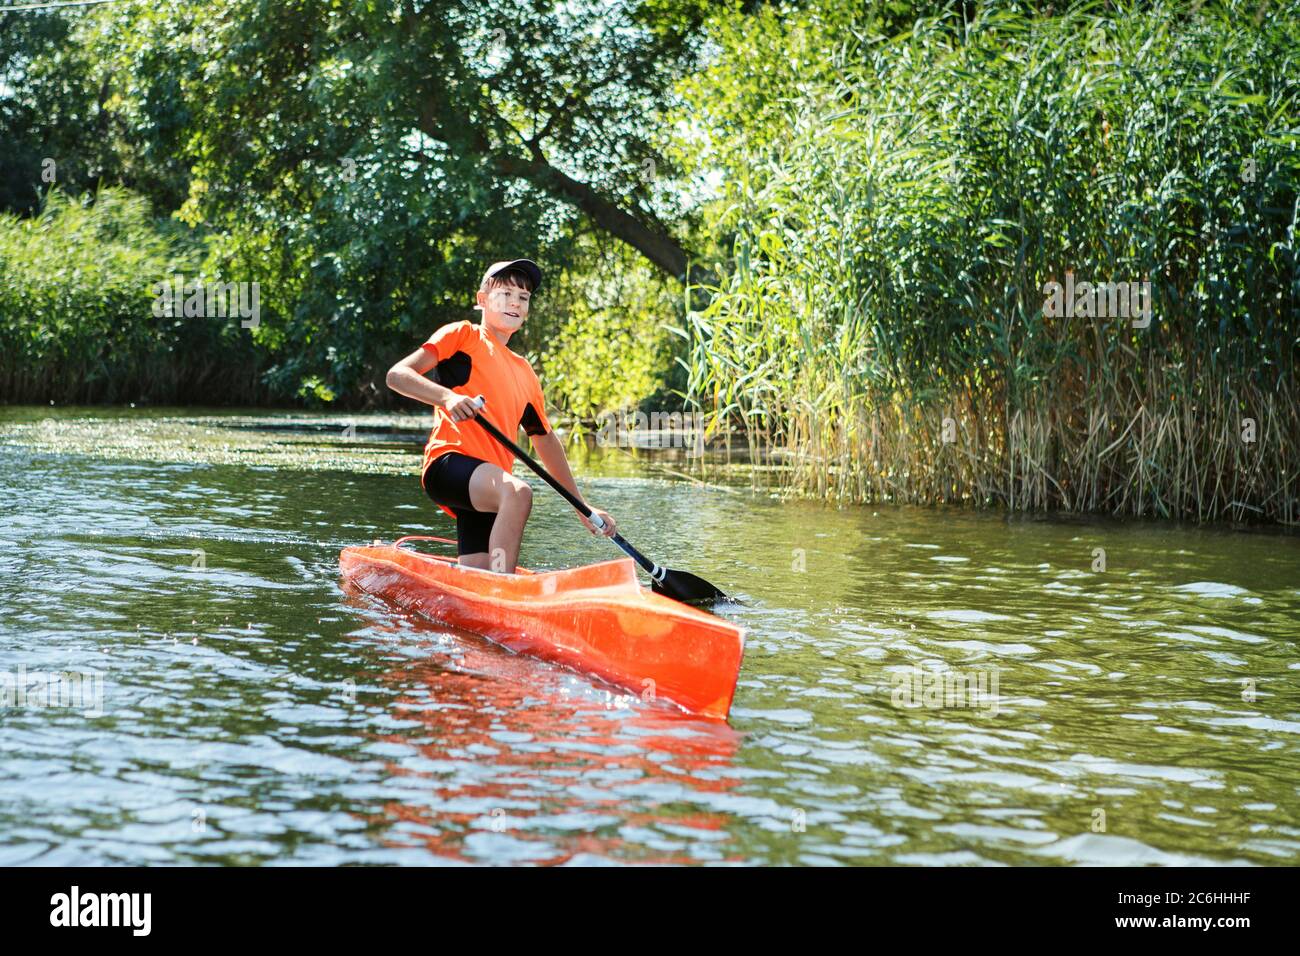 Le garçon ramer dans un canoë sur la rivière. Scènes d'action Photo Stock -  Alamy